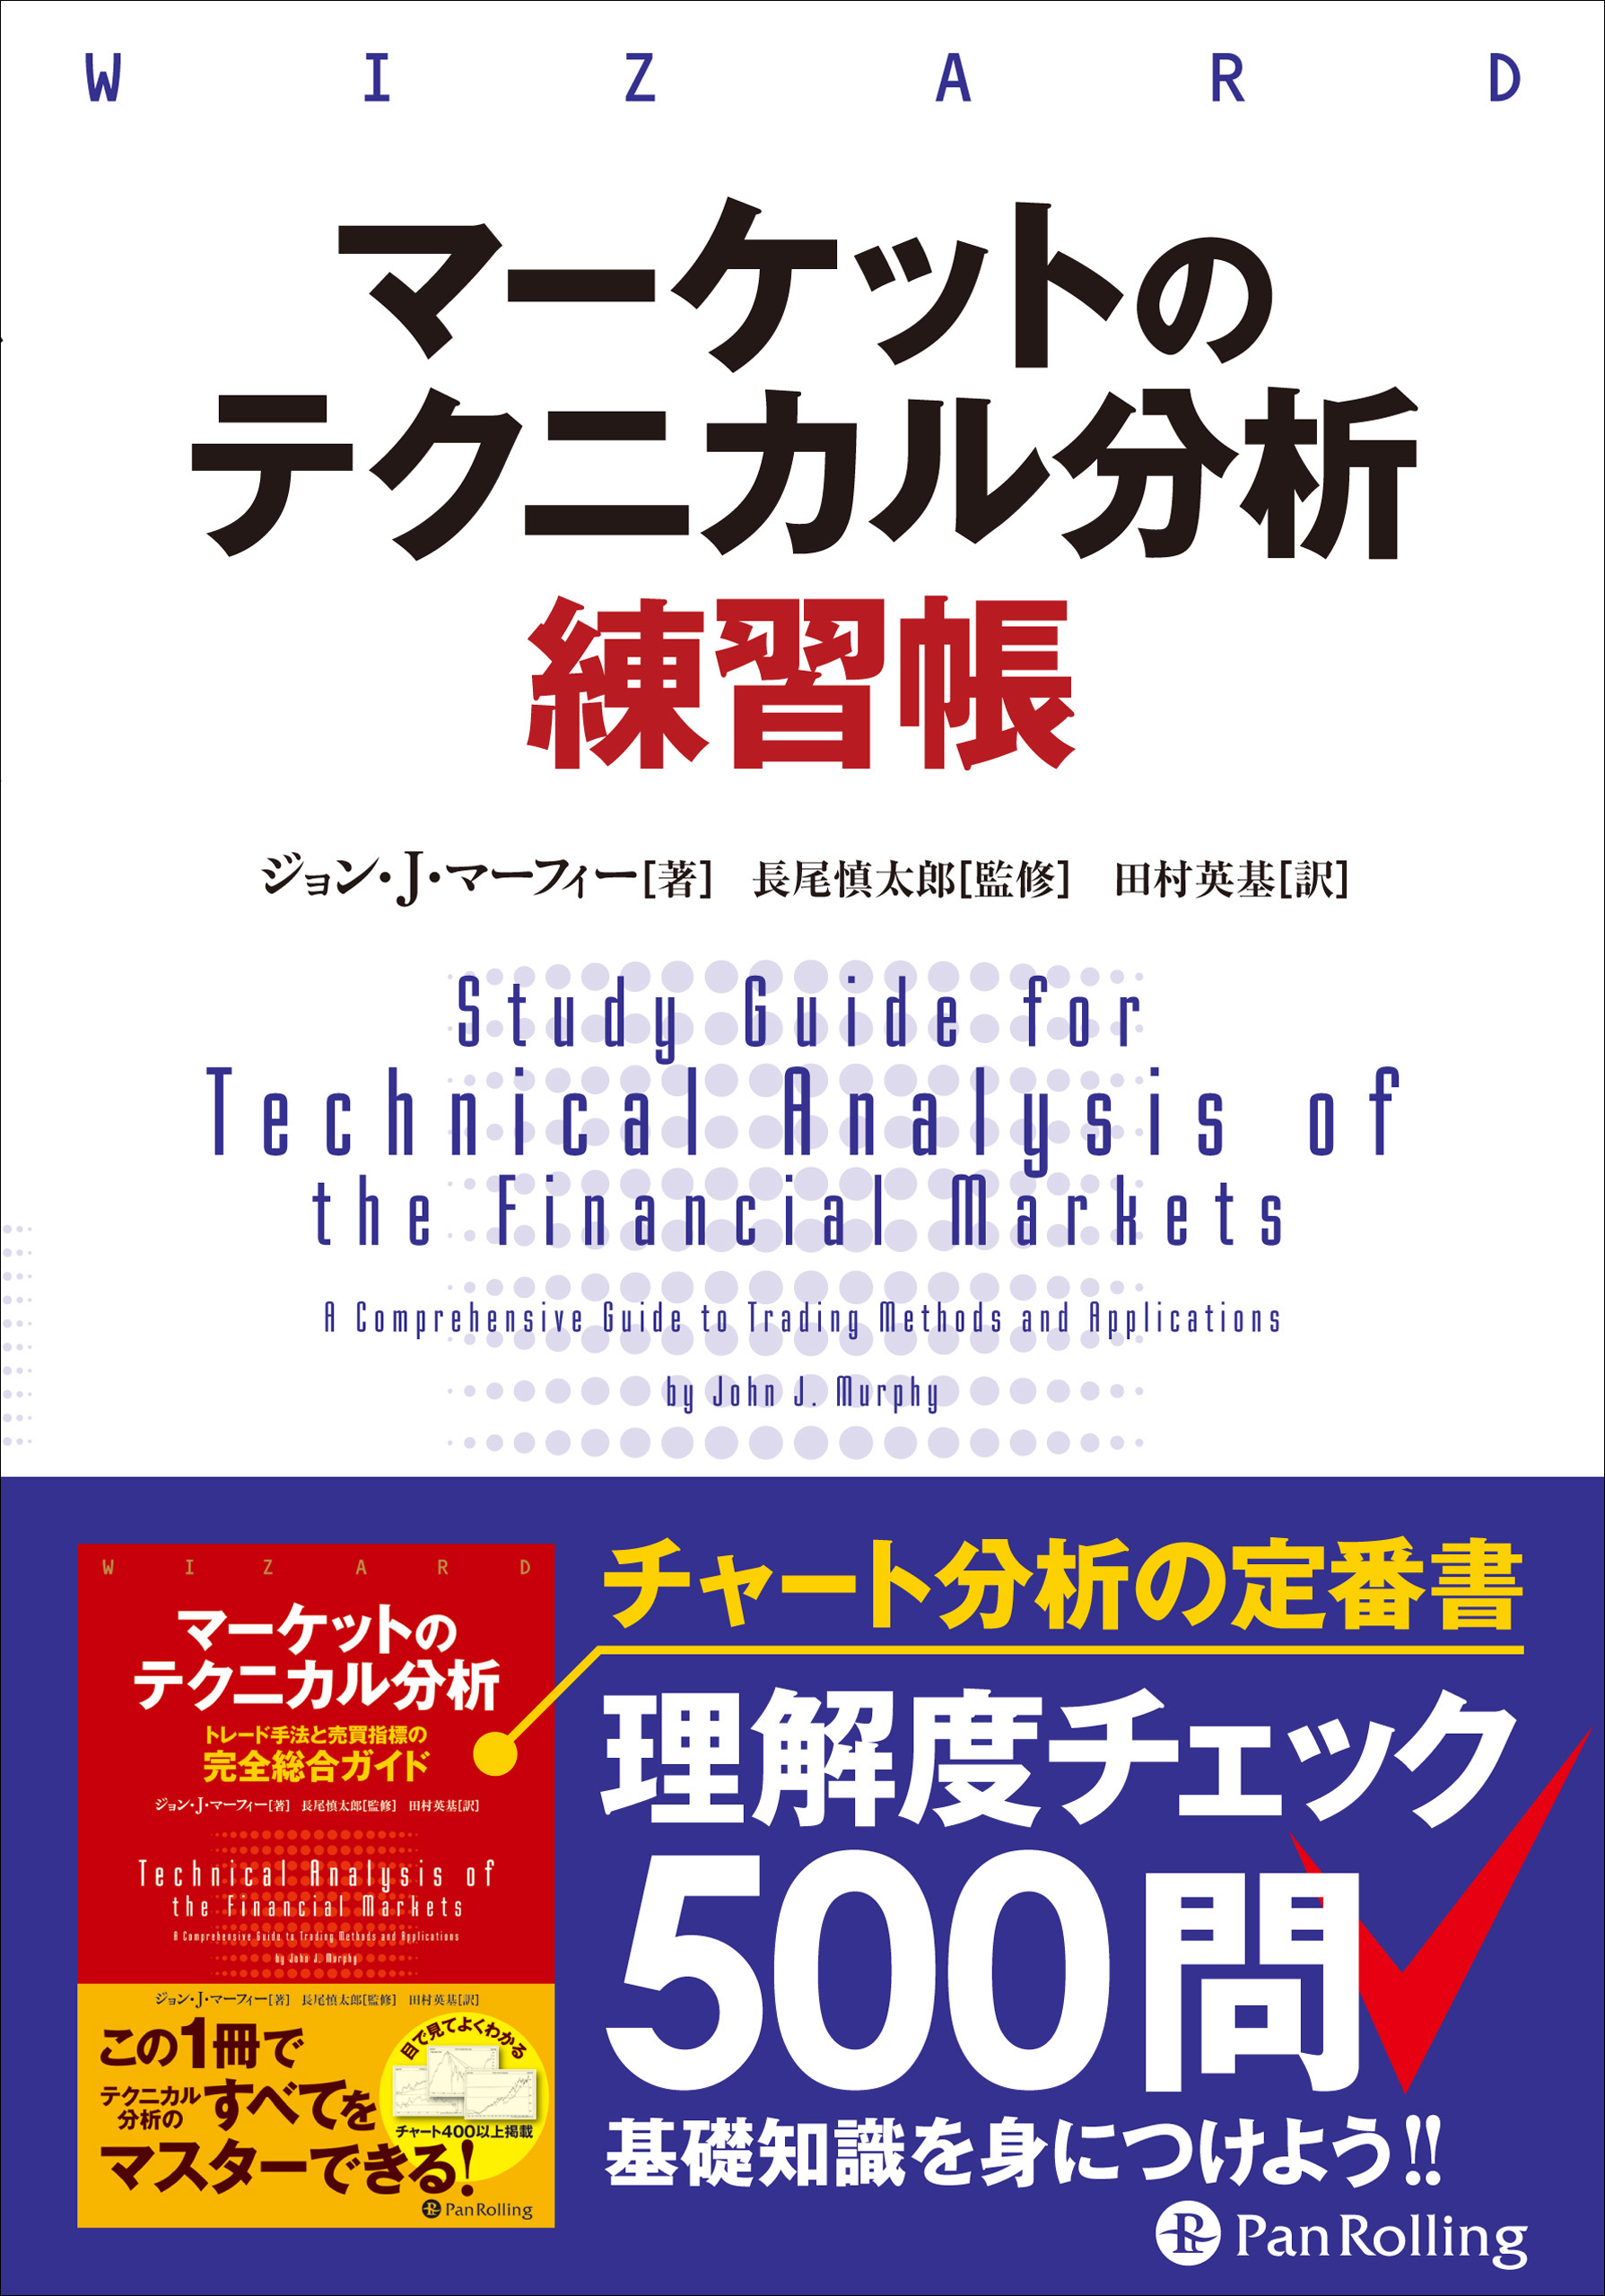 マーケットのテクニカル分析 練習帳(書籍) - 電子書籍 | U-NEXT 初回 